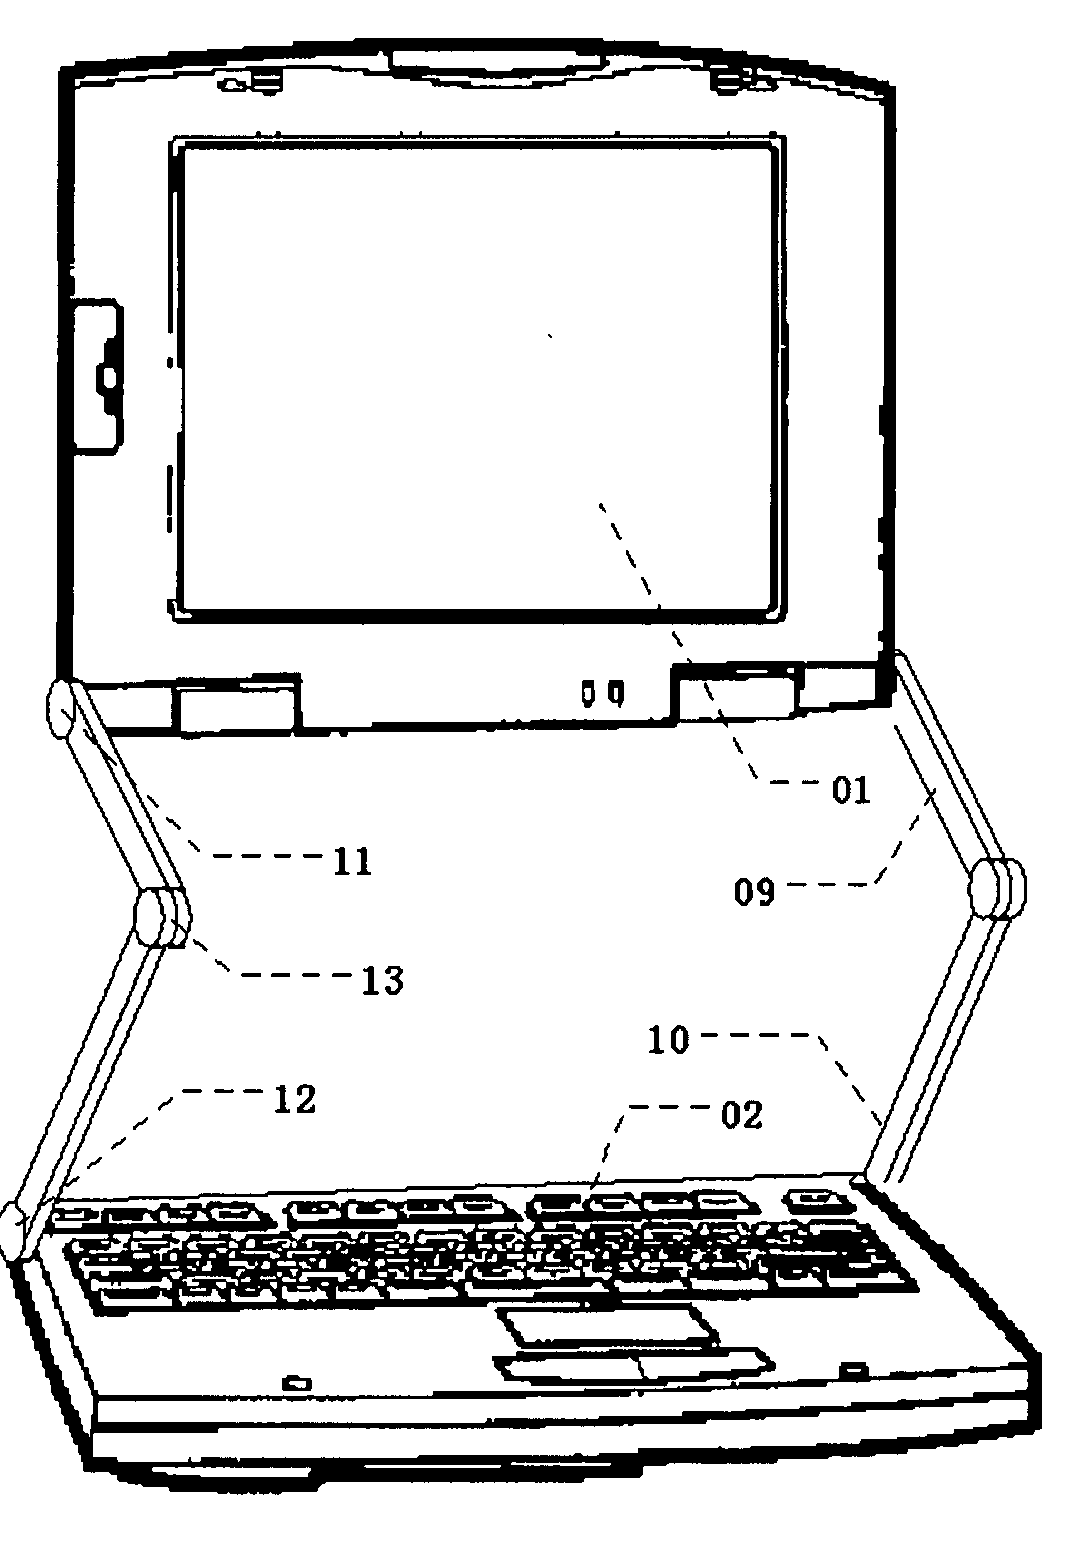 Portable computer